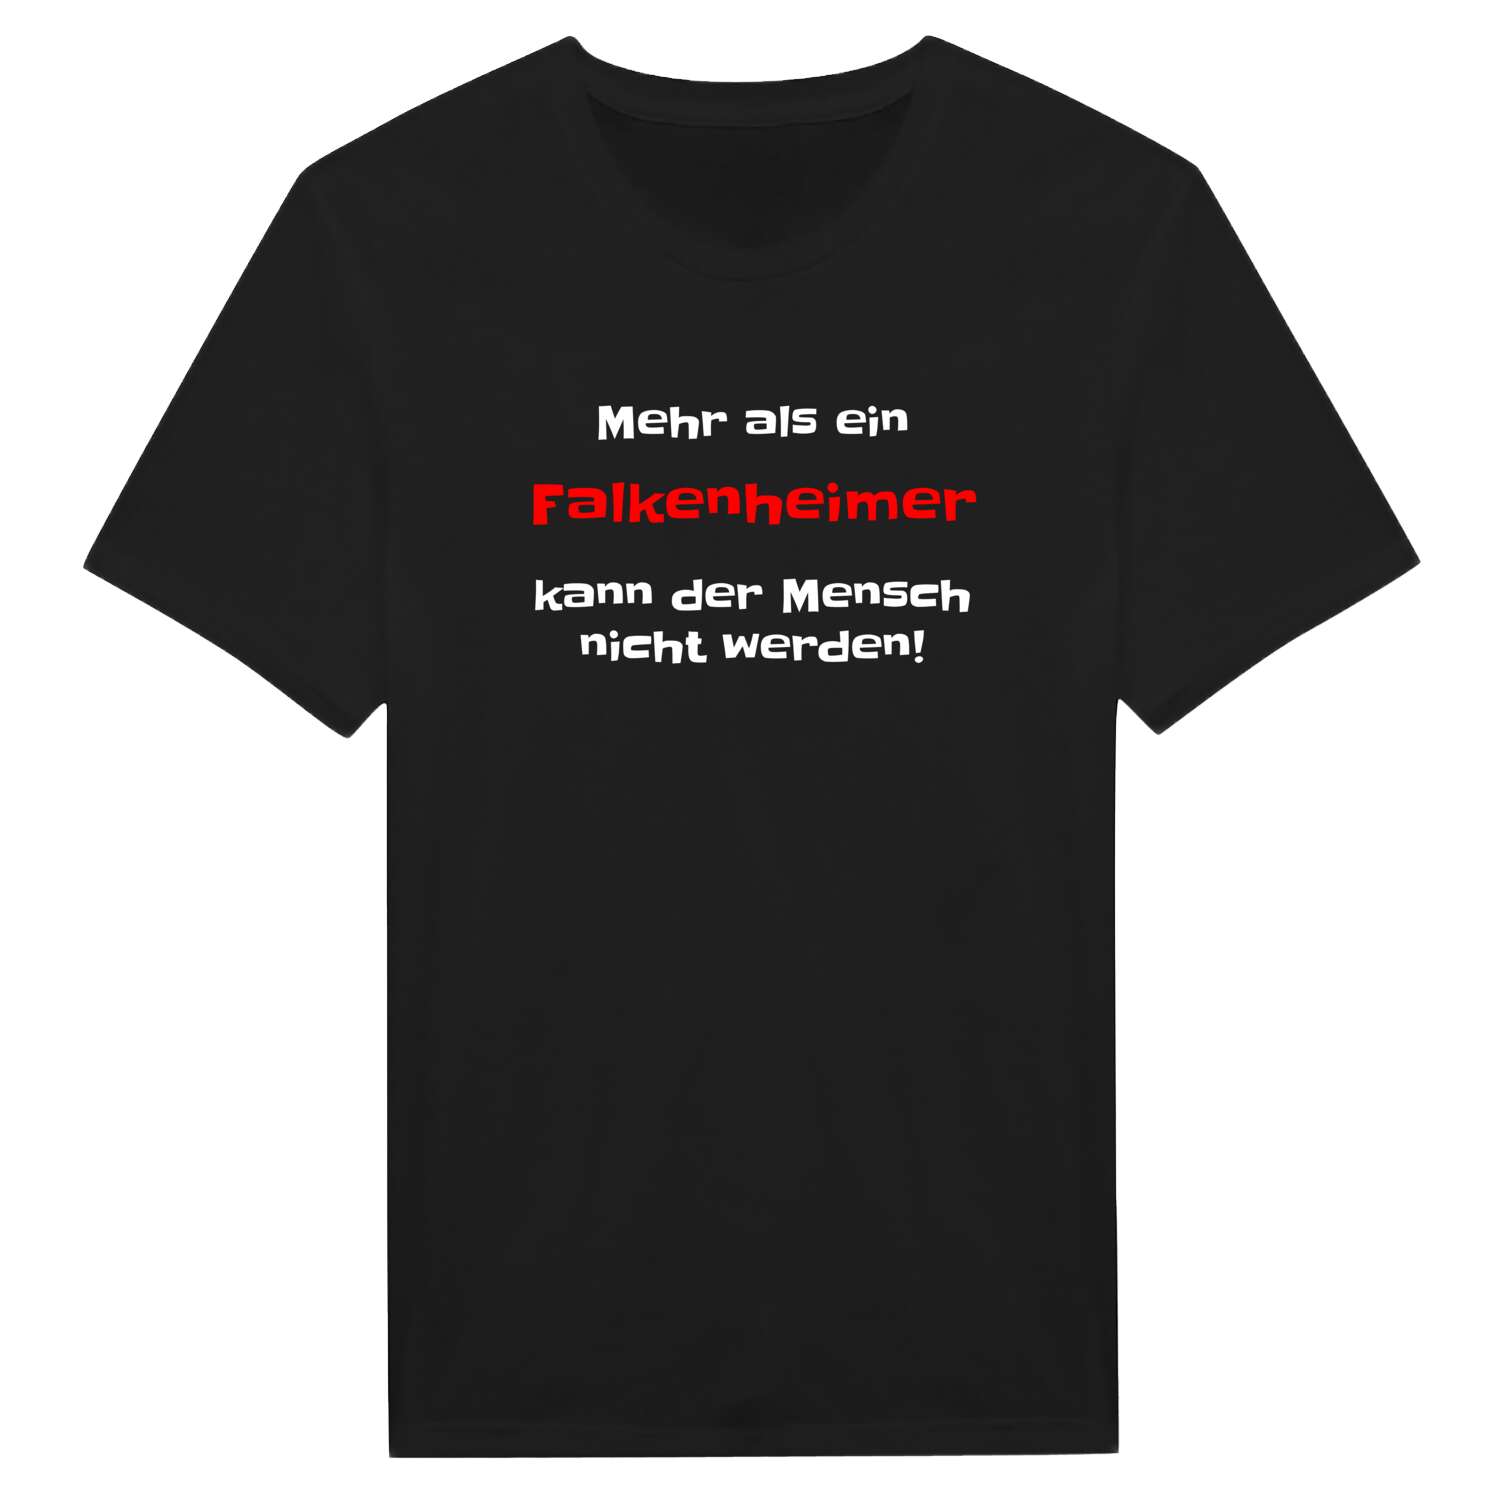 Falkenheim T-Shirt »Mehr als ein«